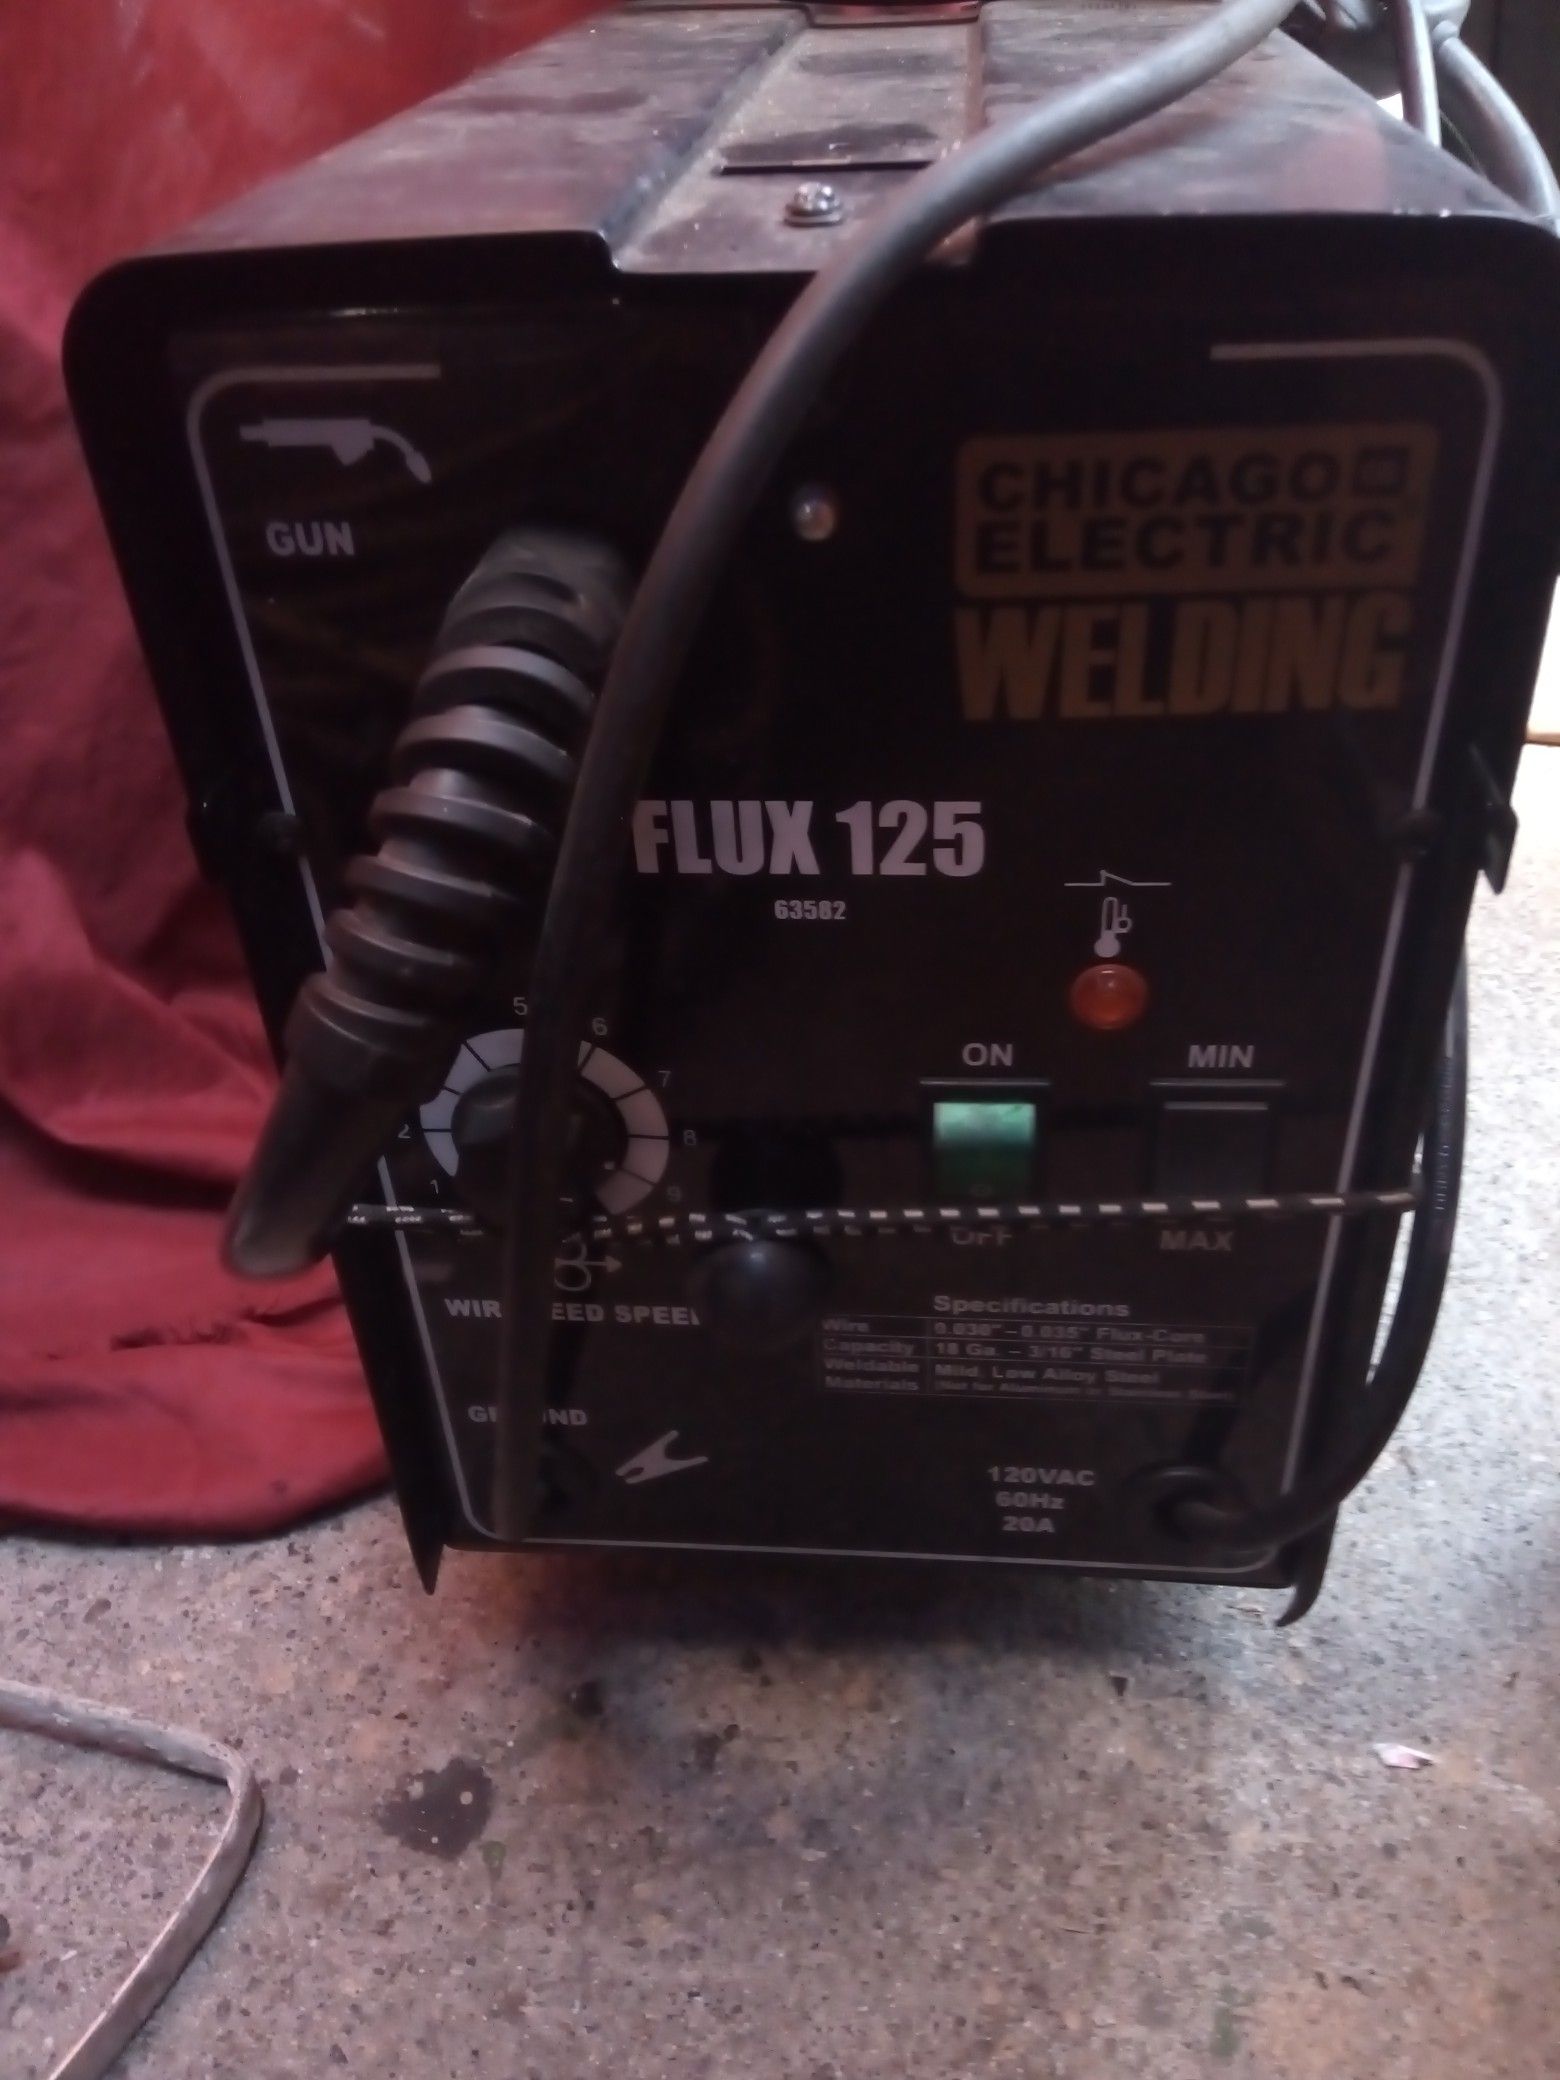 CHICAGO ELECTRIC WELDING Flux 125 Welder